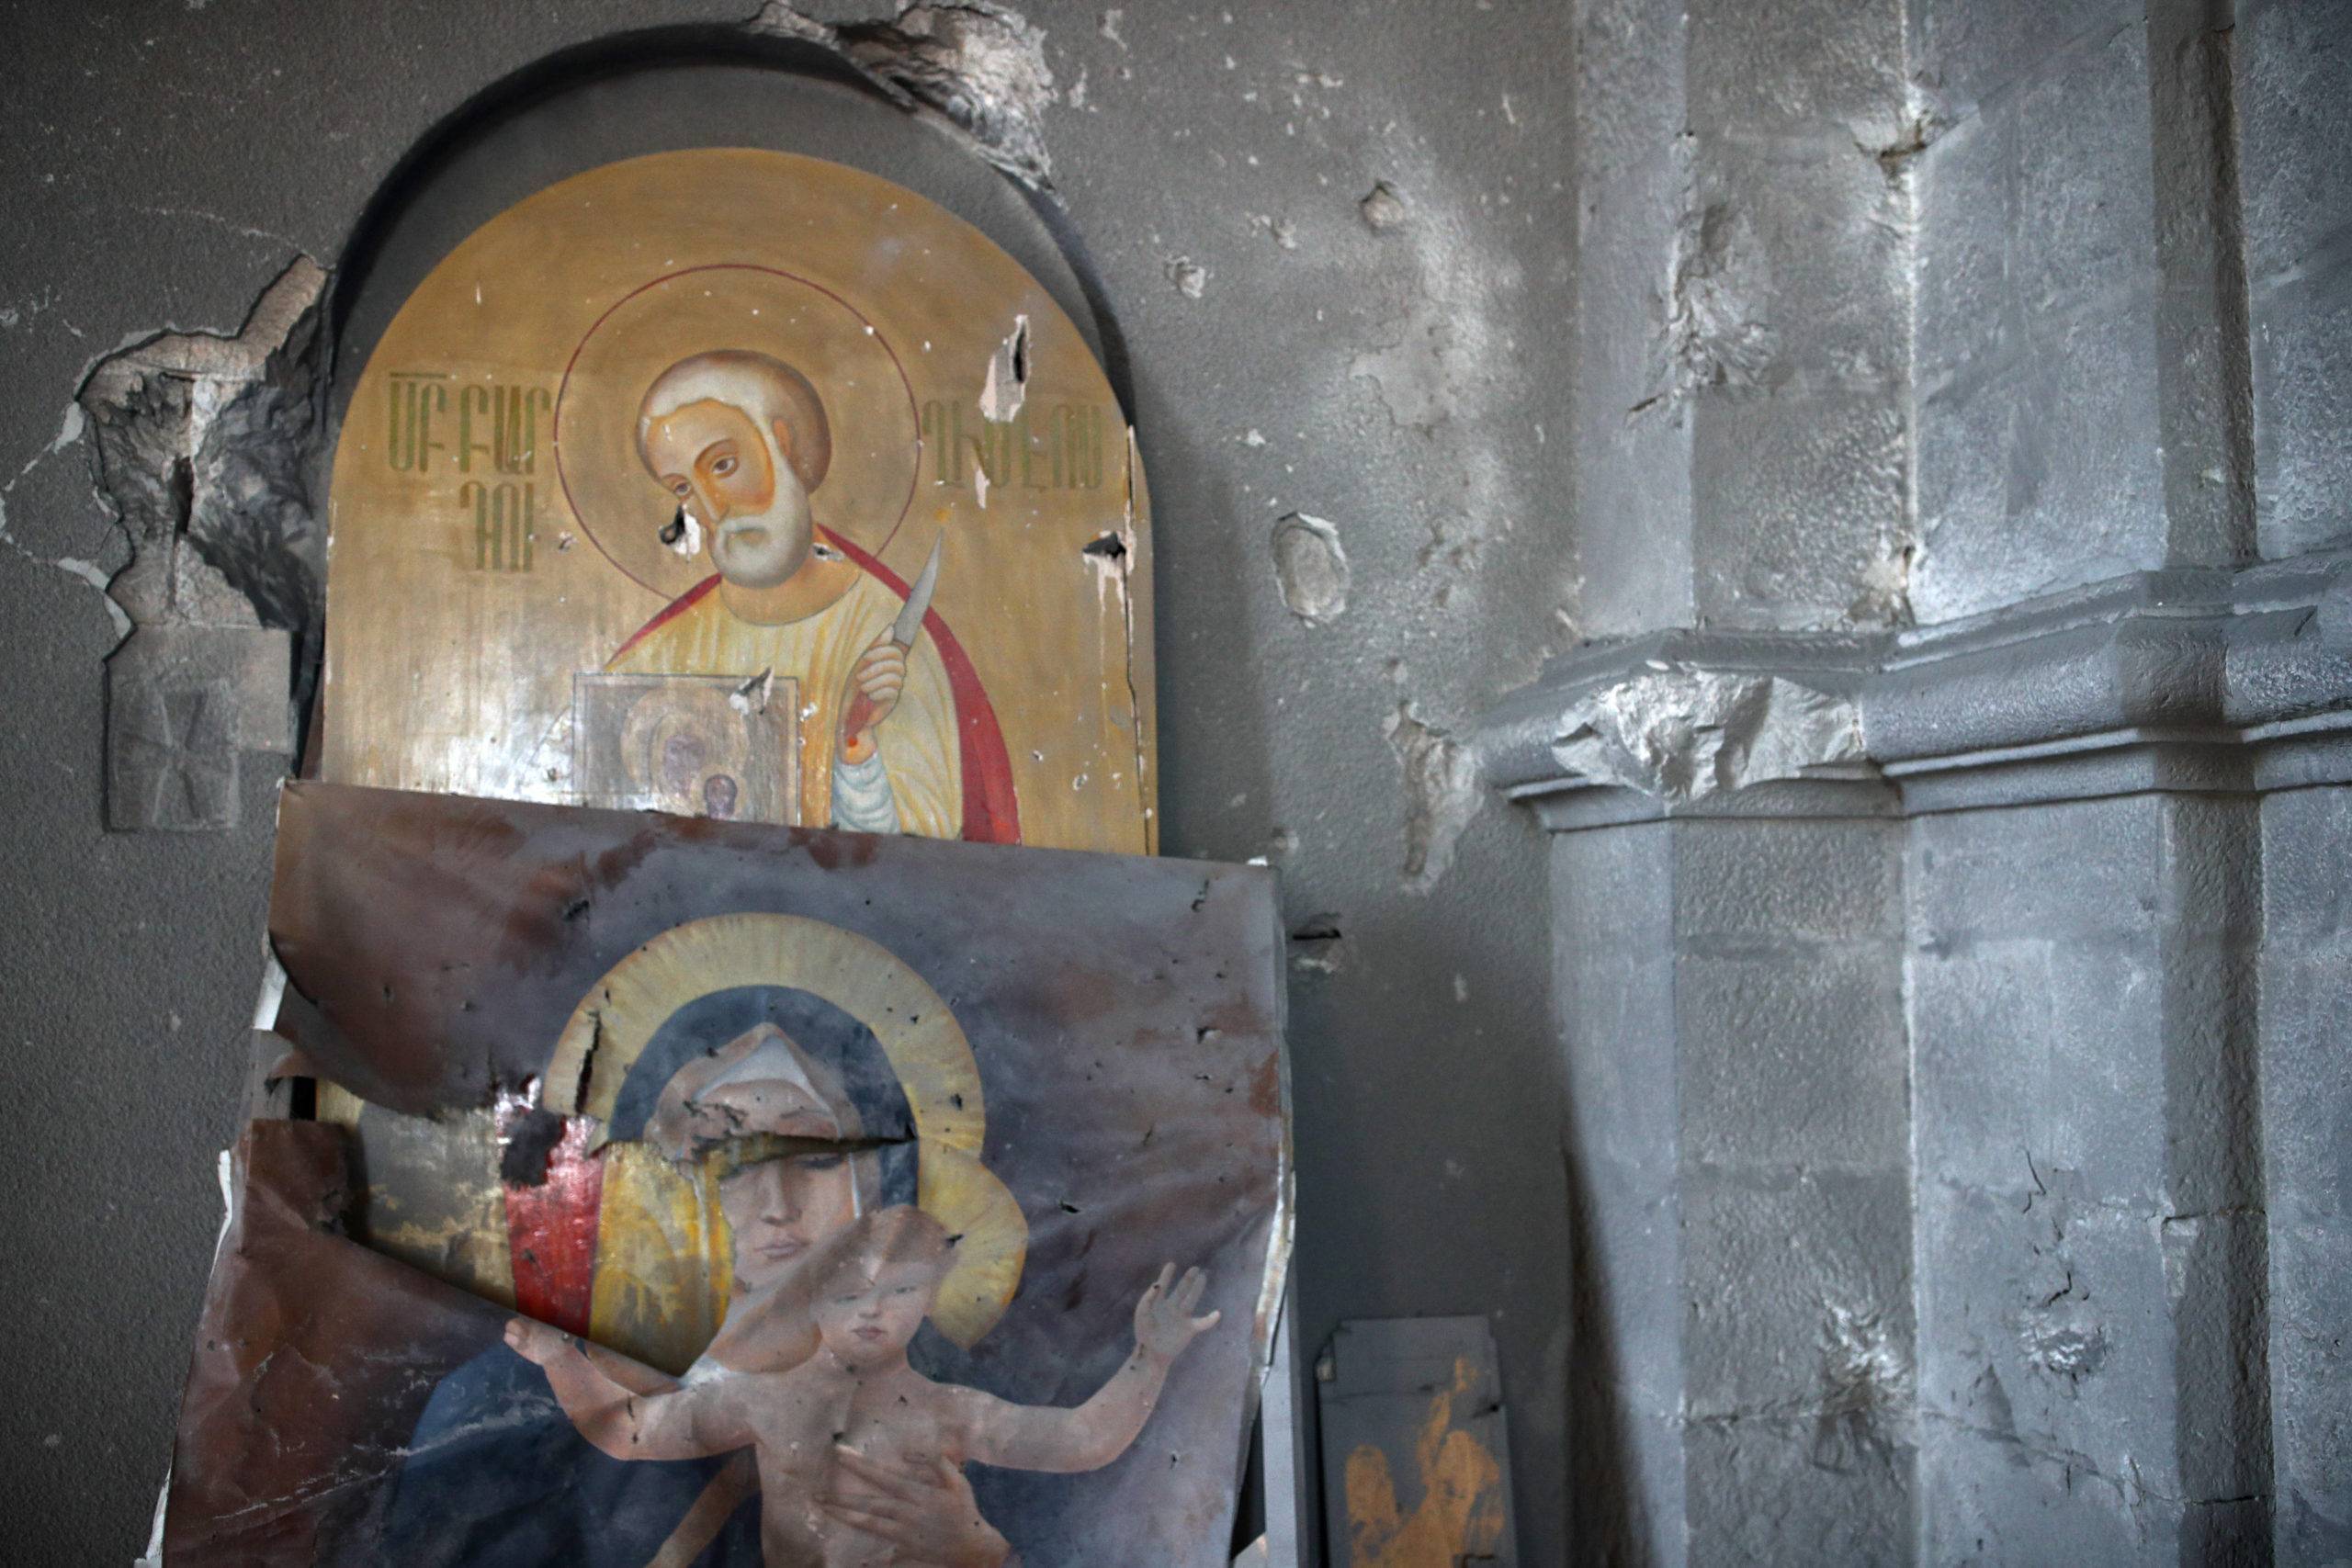 SHUSHA, NAGORNO-KARABAKH - OCTOBER 18, 2020: Icons at Holy Savior (Ghazanchetsots) . Sergei Bobylev/TASS/Sipa USA/31150712/YD/2010181801